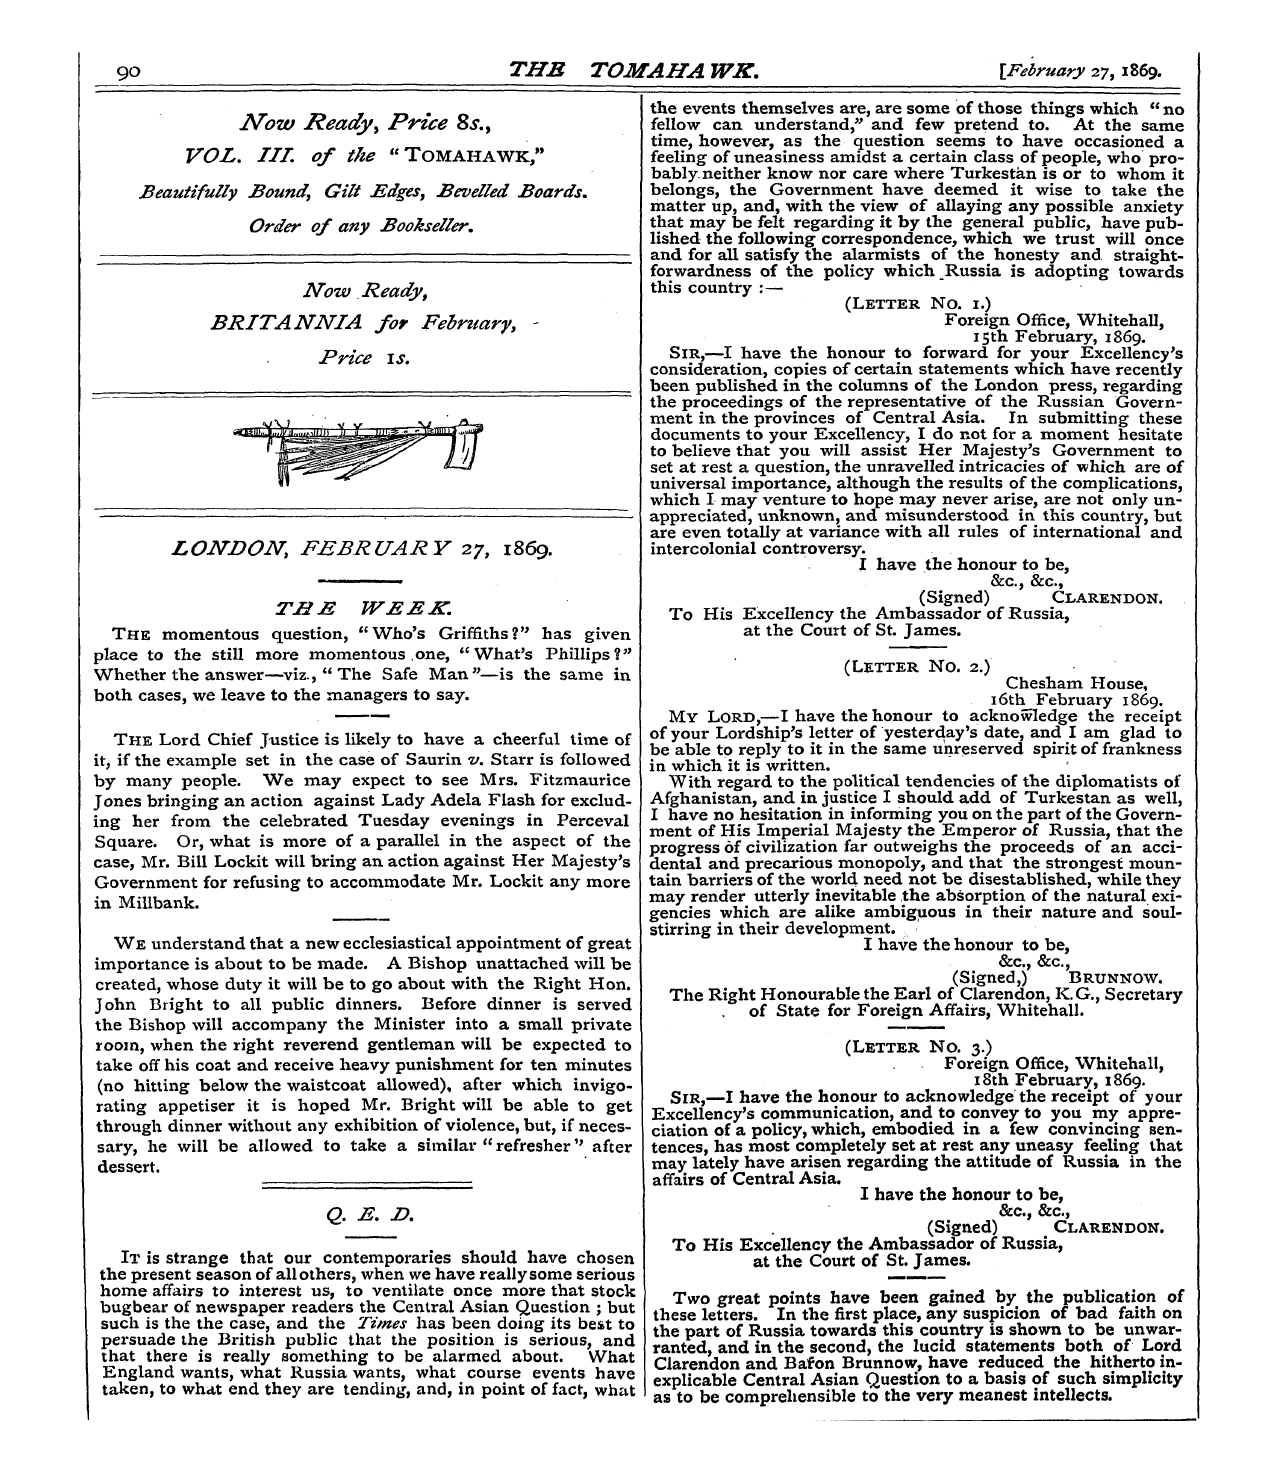 Tomahawk (1867-1870): jS F Y, 1st edition - Q. E. D.